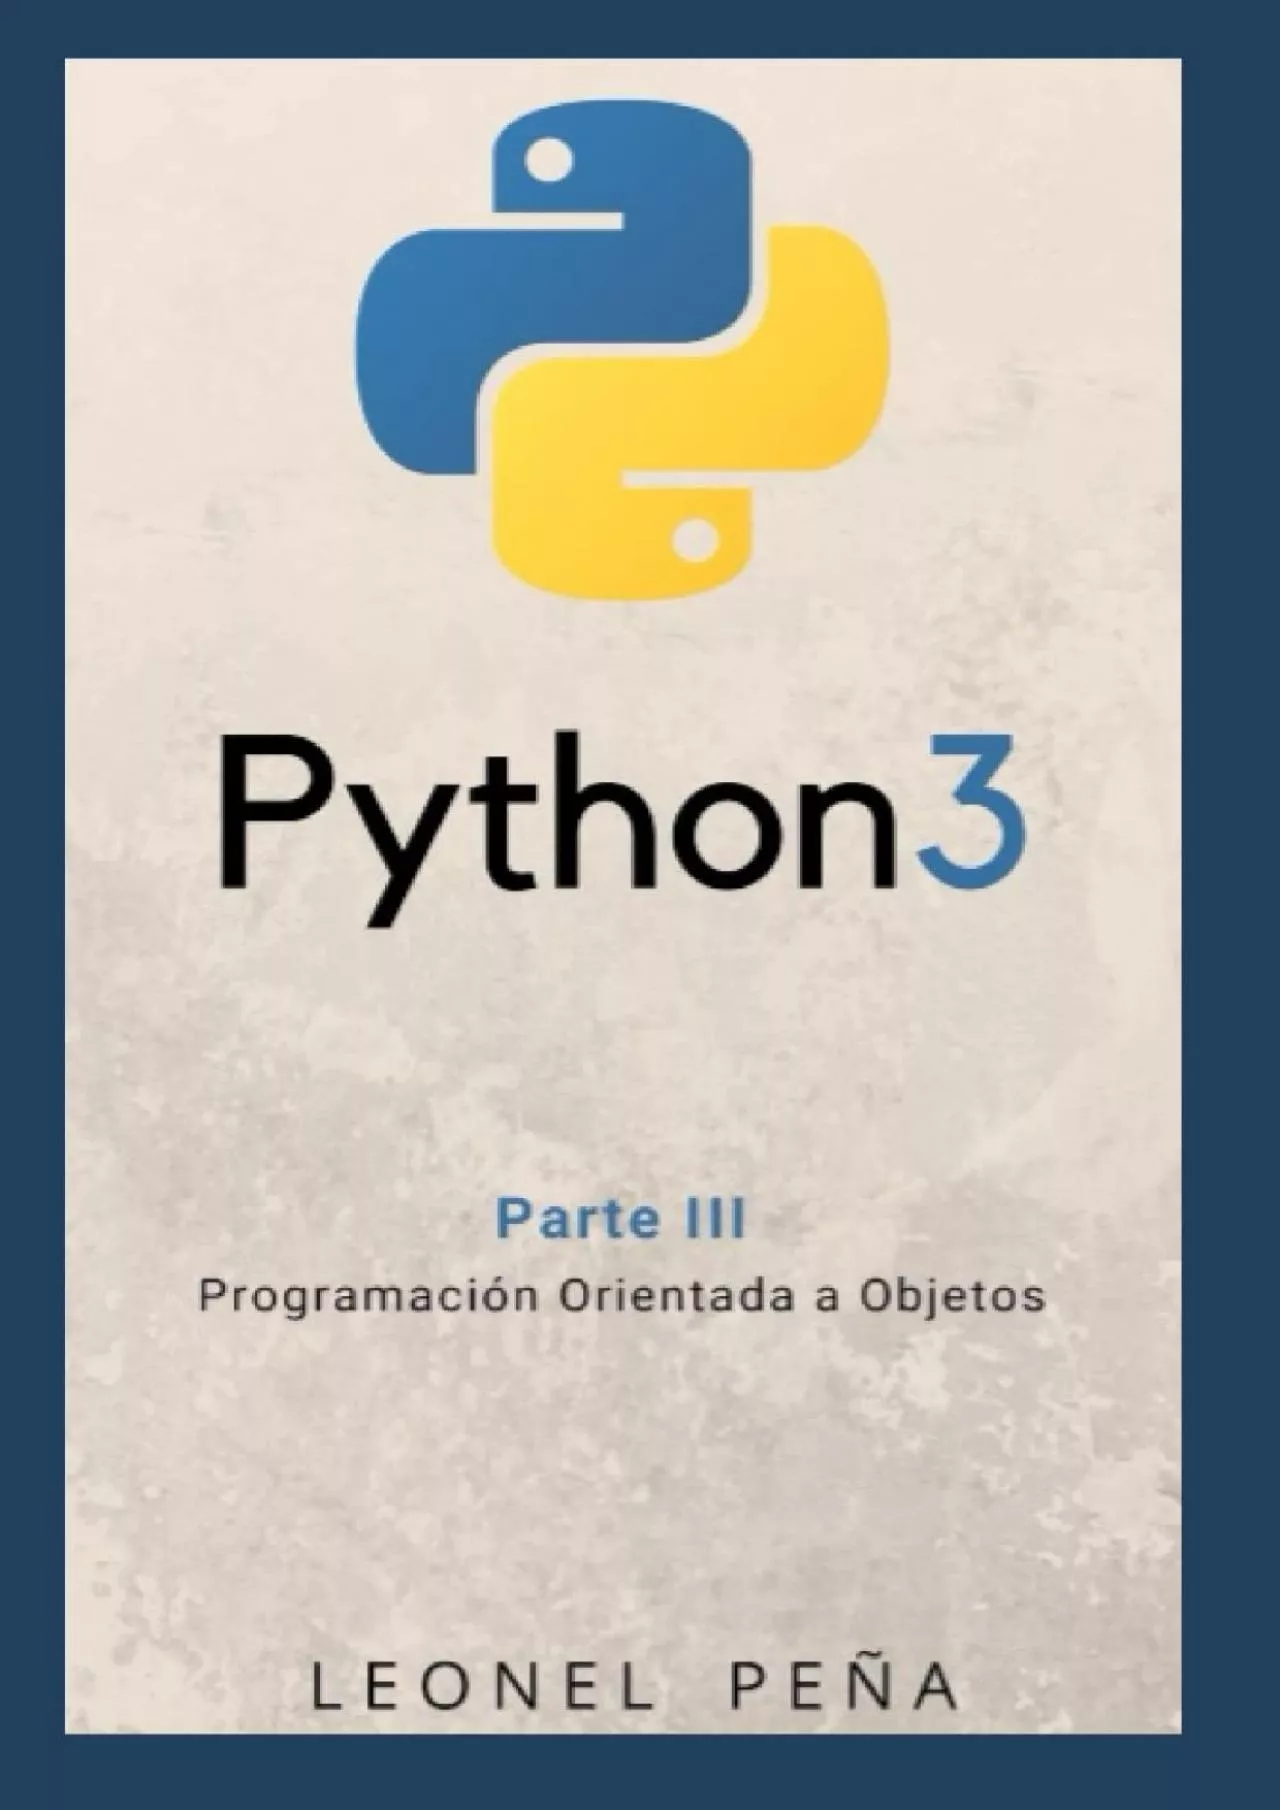 [PDF]-PYTHON 3: Parte III - Programación Orientada a Objetos (Aprende Python 3 Desde